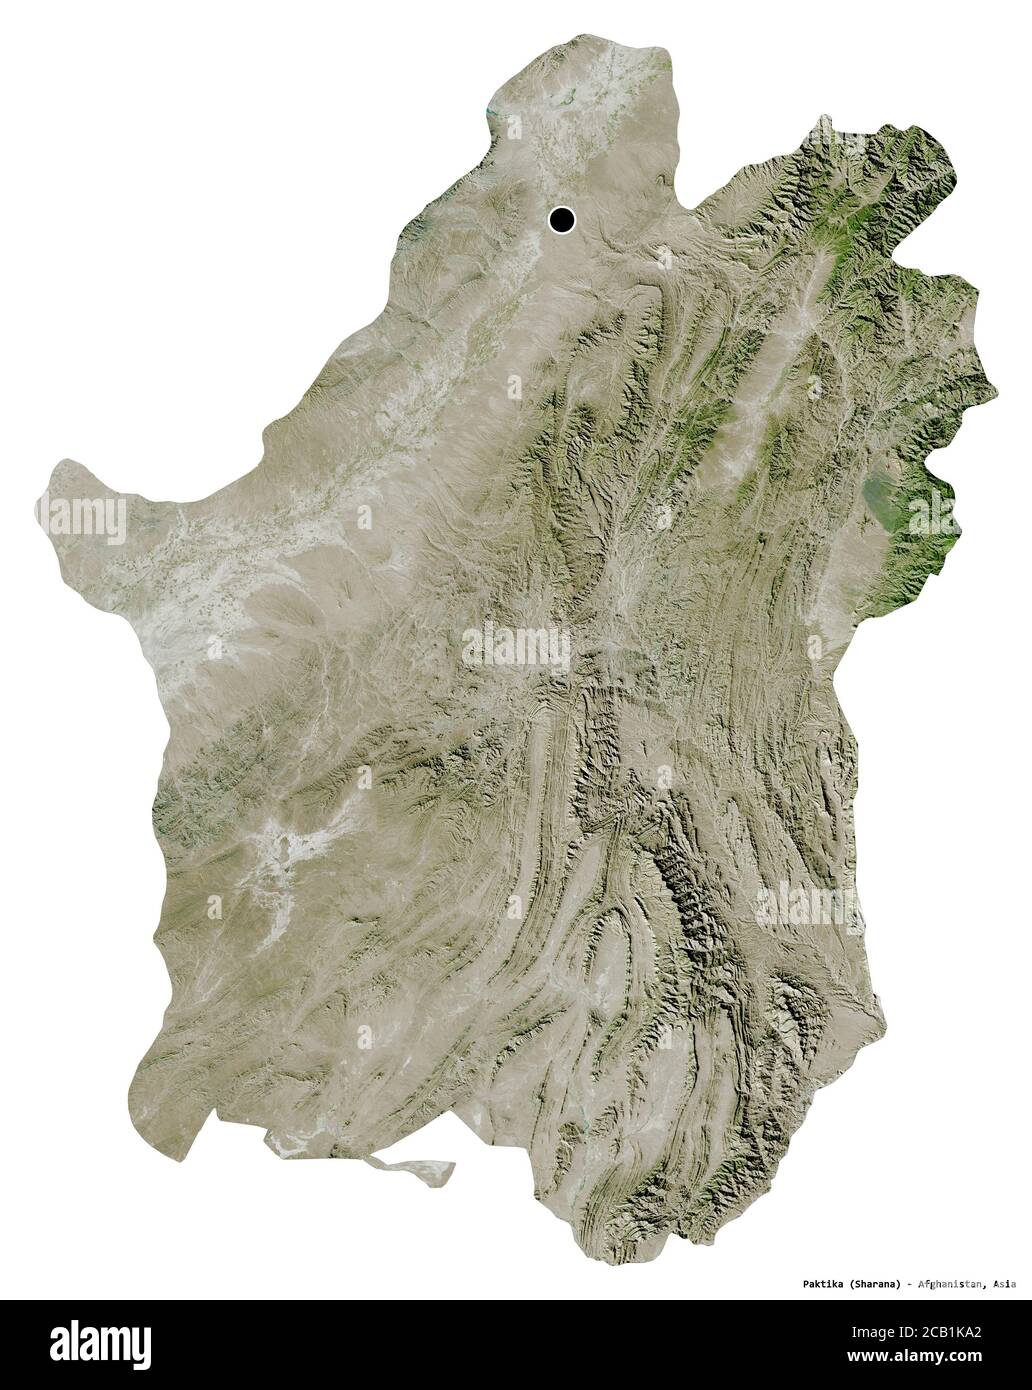 Forma di Paktika, provincia dell'Afghanistan, con la sua capitale isolata su sfondo bianco. Immagini satellitari. Rendering 3D Foto Stock